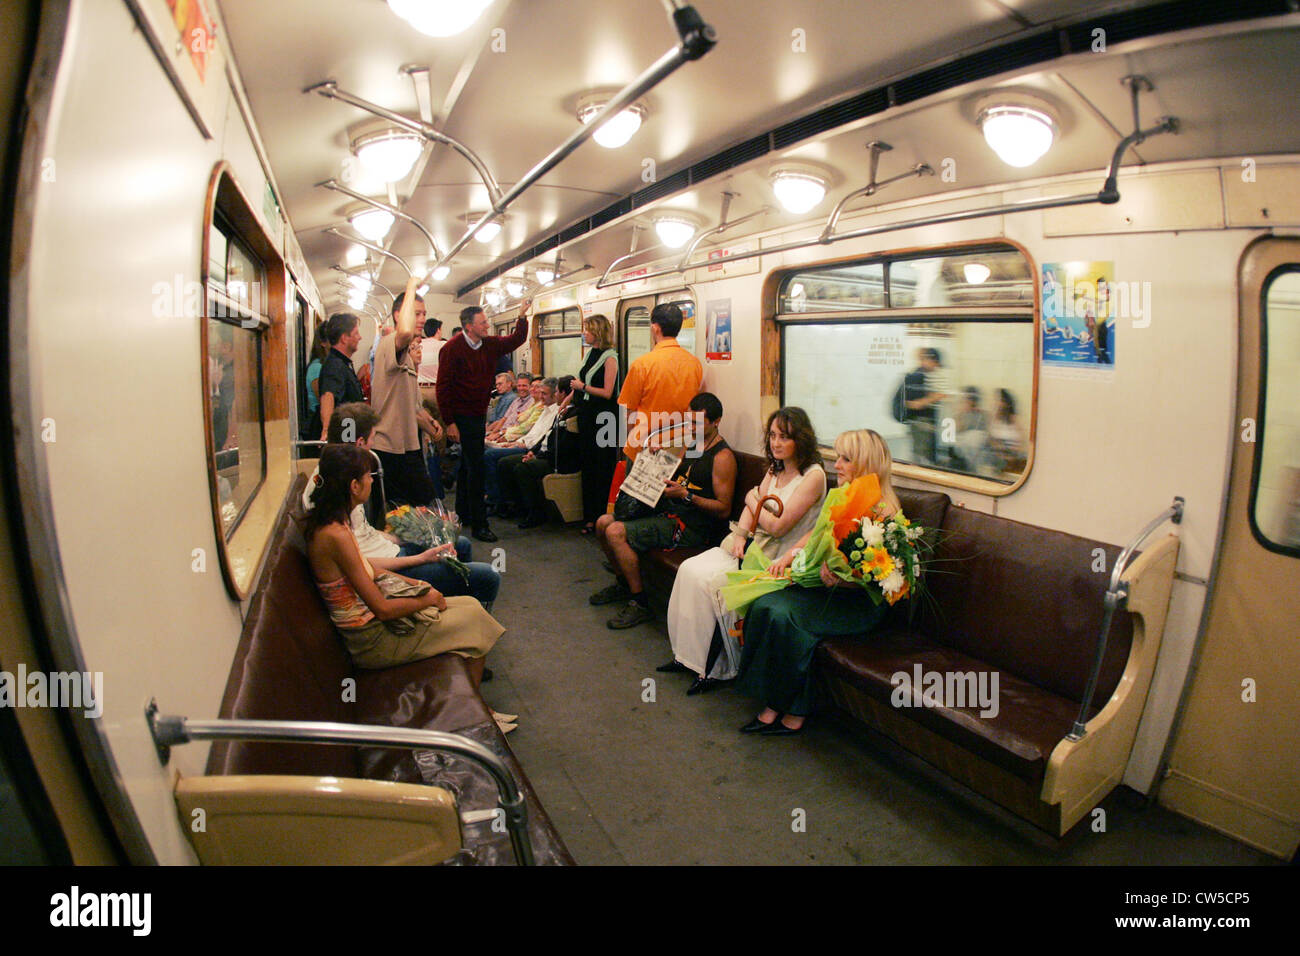 Mosca - I passeggeri nella metropolitana di Mosca Foto Stock